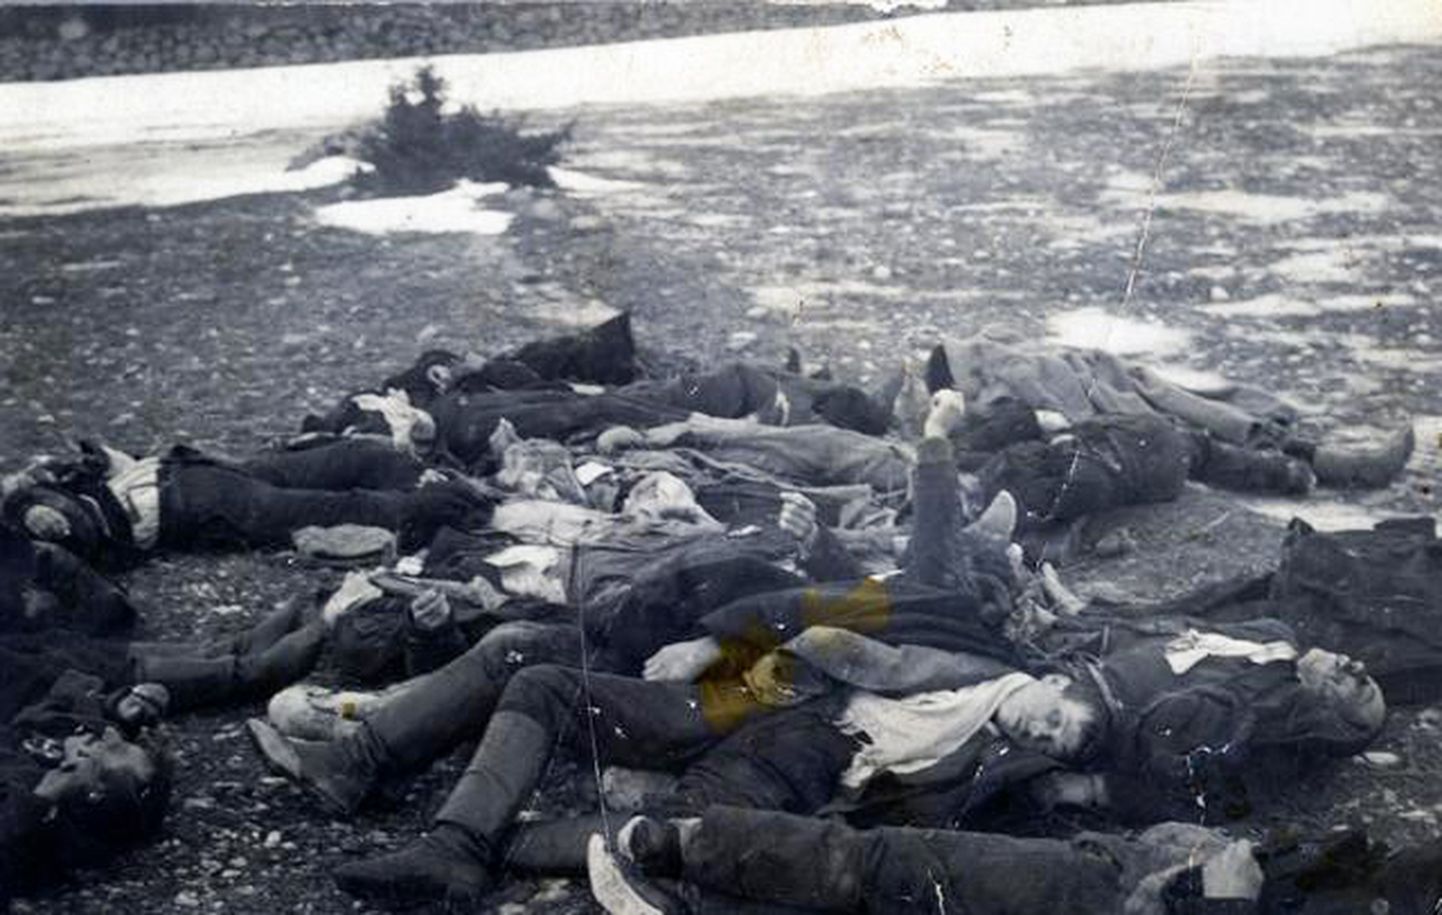 TAPETUD: Mässu ajal karistussalga poolt tapetud Upa karjamaal.
Martin Jakobsoni foto.